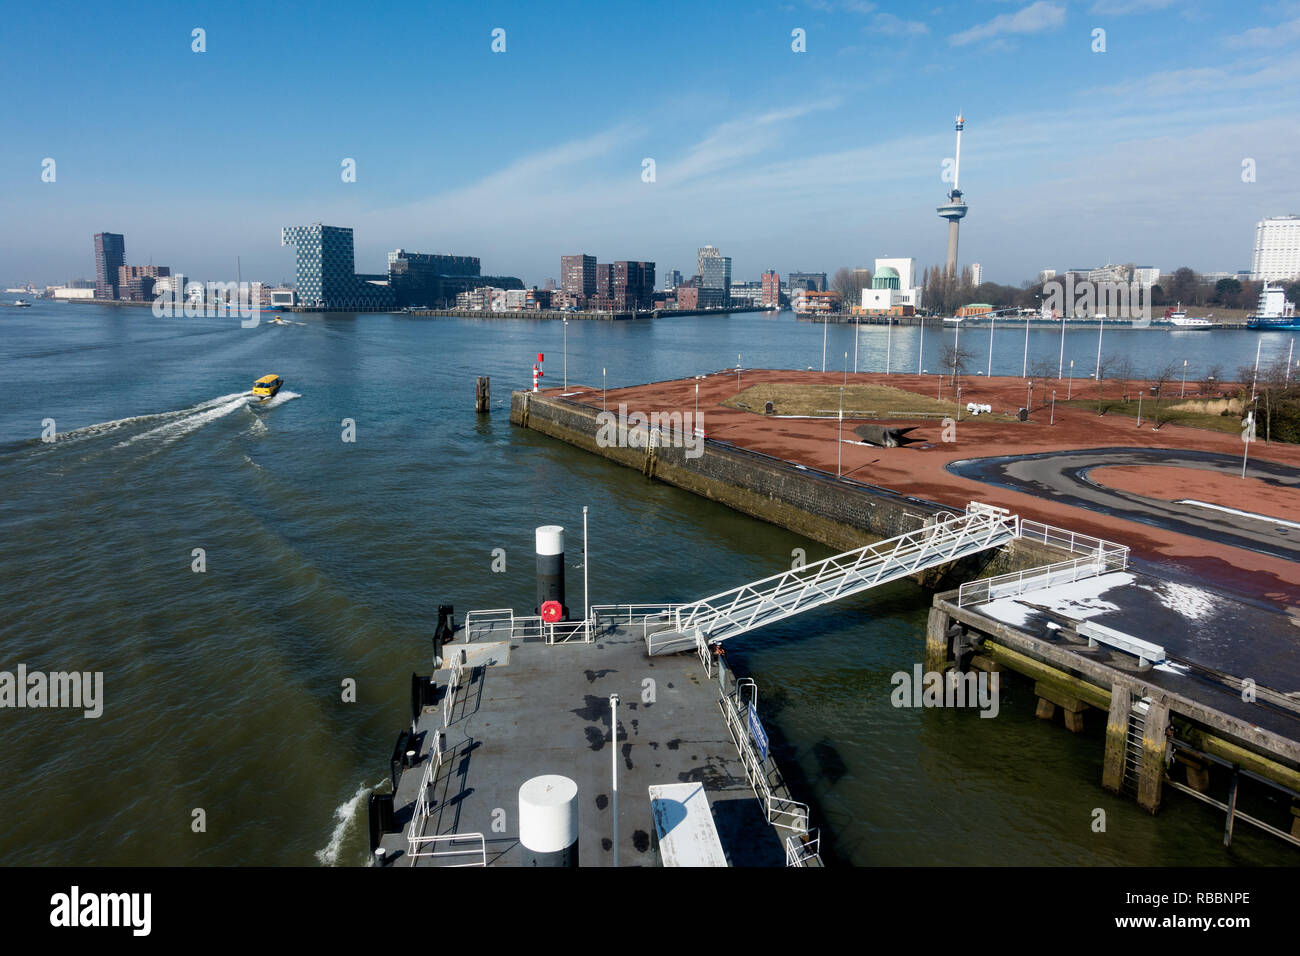 Second Katendrecht harbor in Rotterdam with a view of the Euromast. Tweede Katendrechtse haven in rotterdam met zicht op de Euromast. Stock Photo